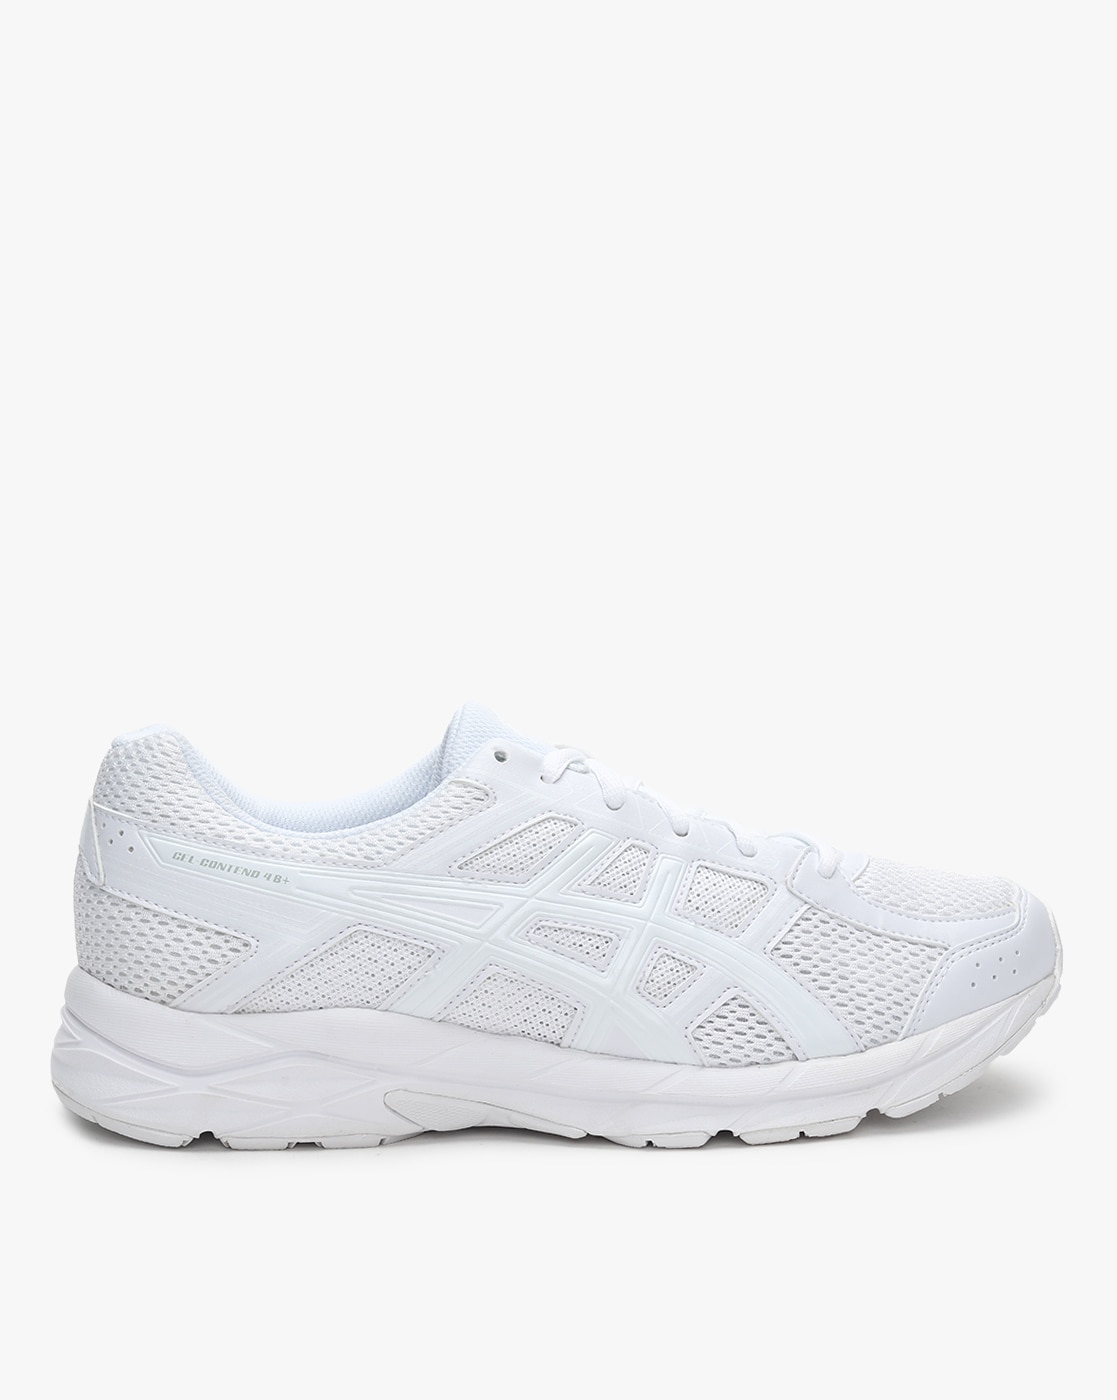 all white asics running shoes